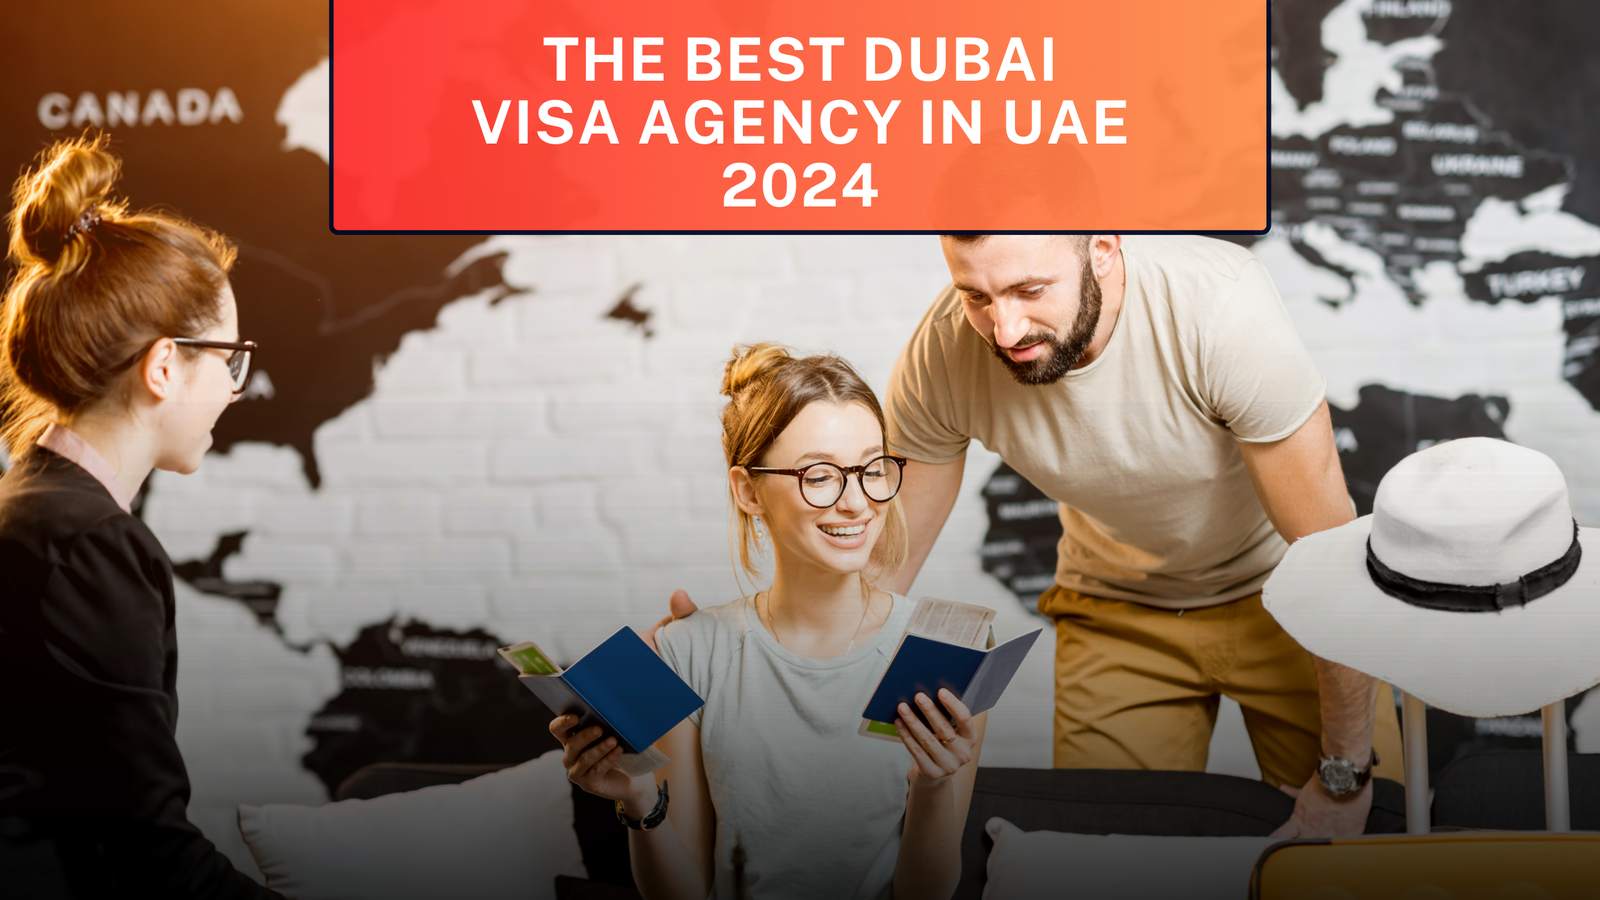 The best dubai visa agency in UAE